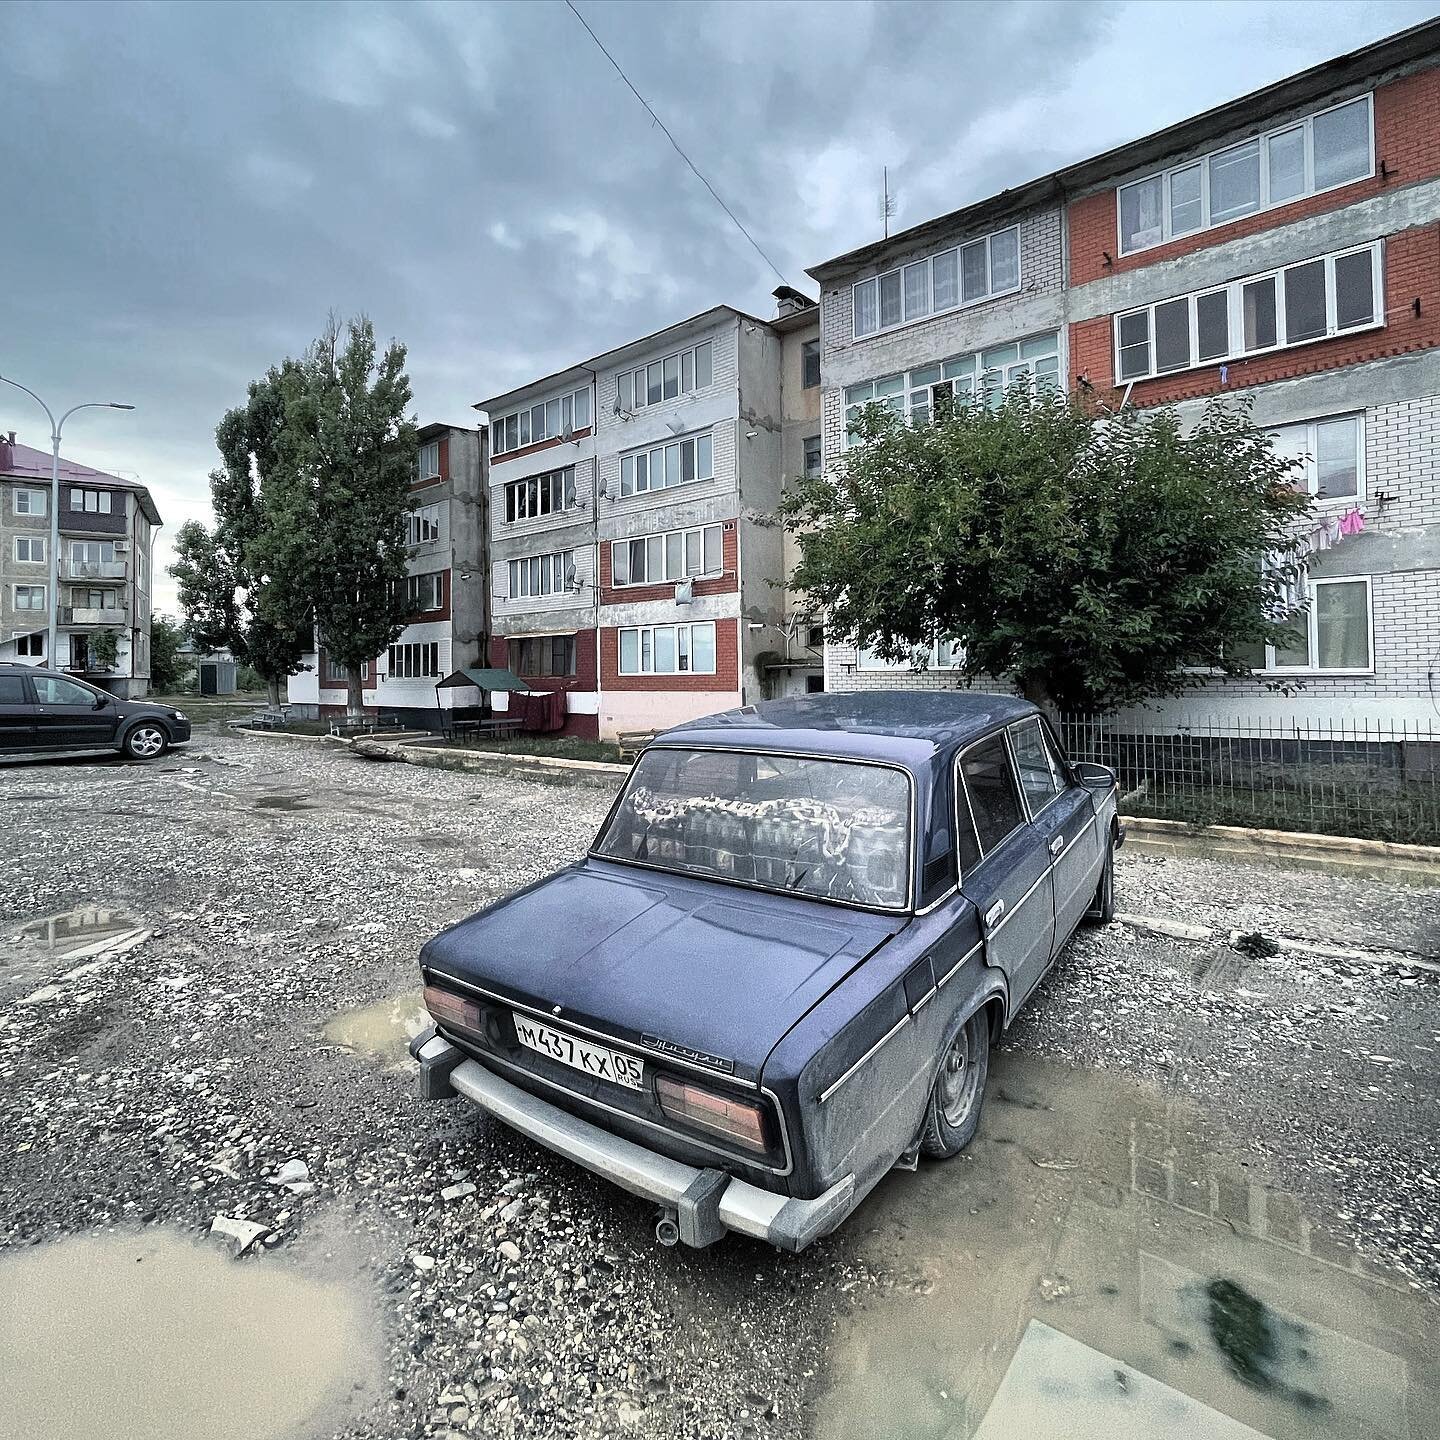 سيارة سوفييتية تقف أمام مبنى يعود لزمن الإتحاد السوفييتي 
#داغستان #روسيا
#dagestan #russia #Дагестан #россия